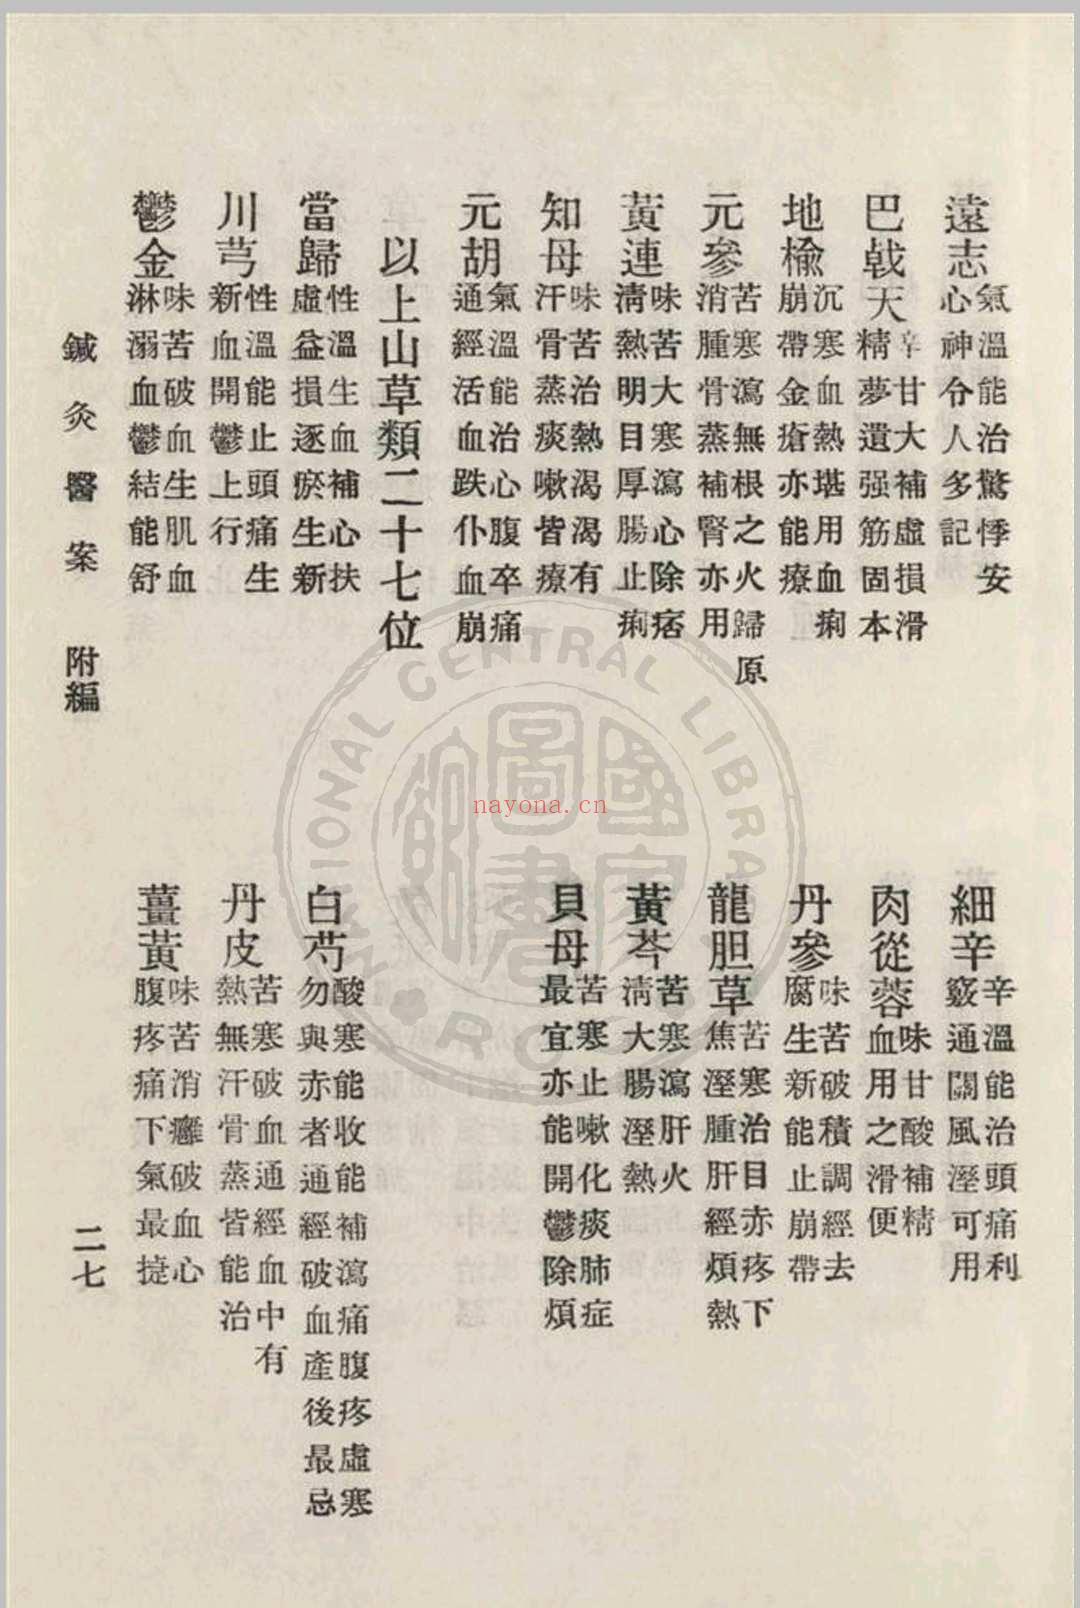 针灸医案 三编李书春撰  朱寿山参订 1936年